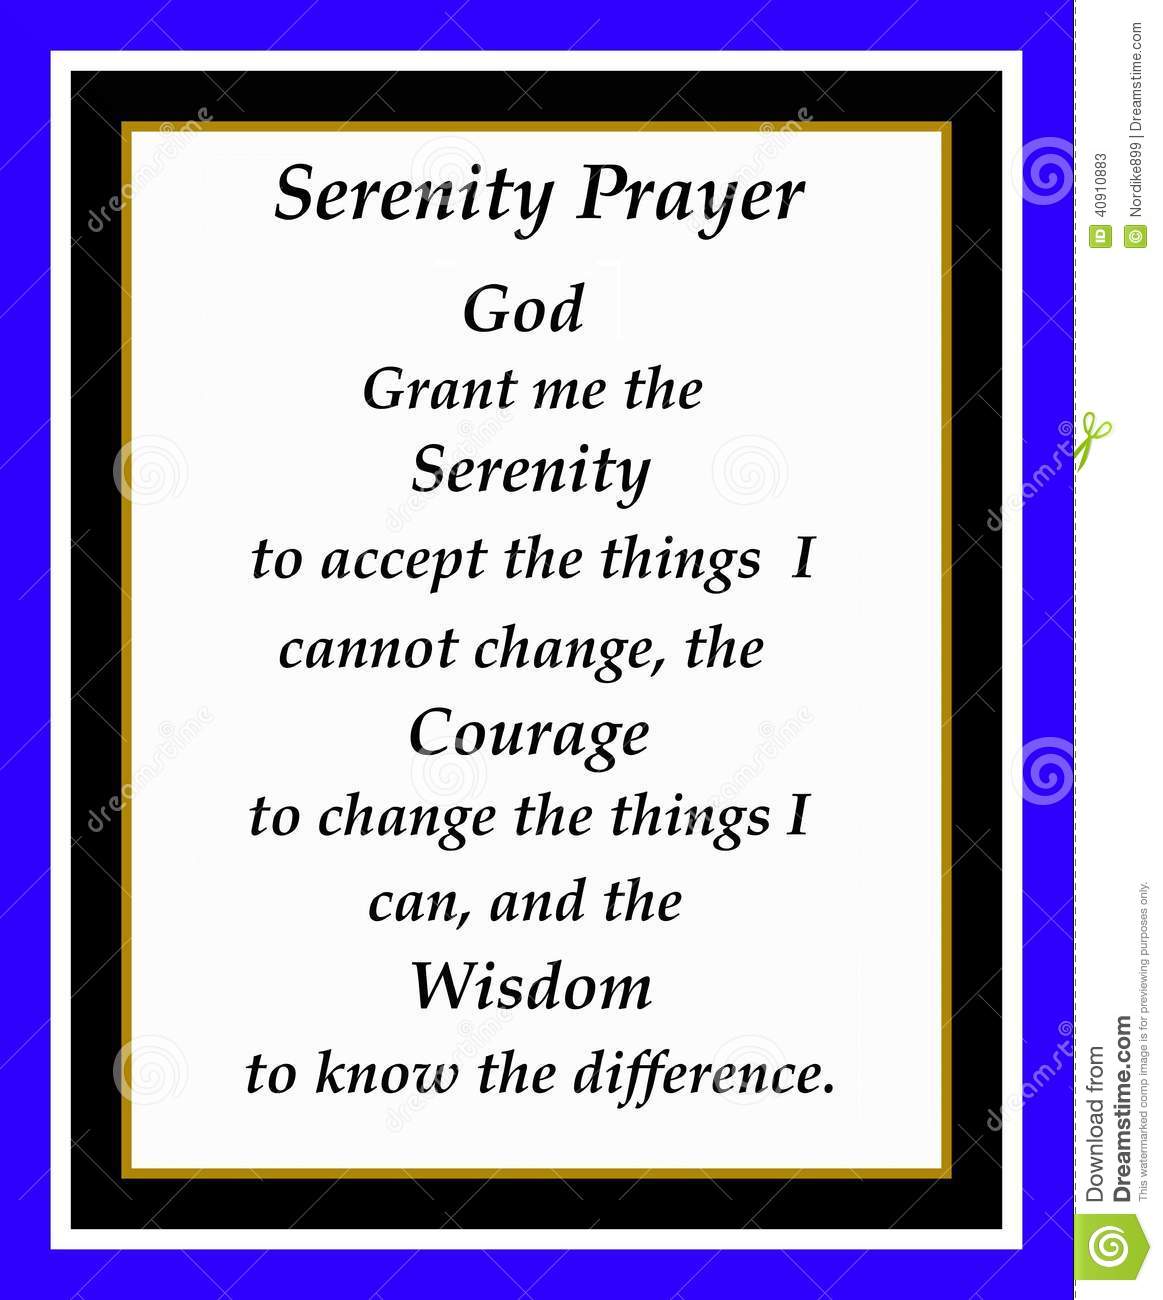 Serenity Prayer Framed With Gold Black White And Blue Frame